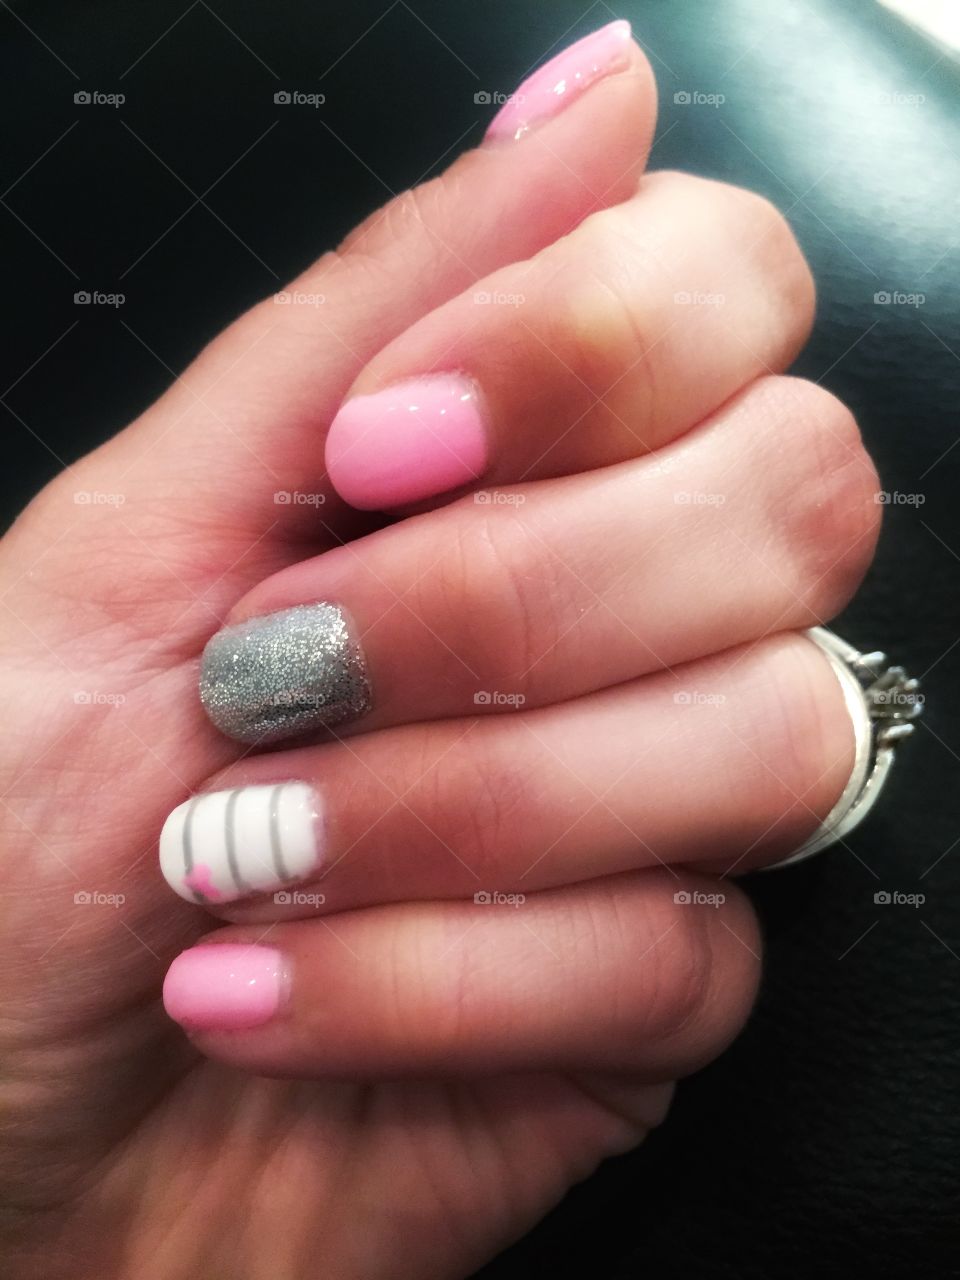 Nails!